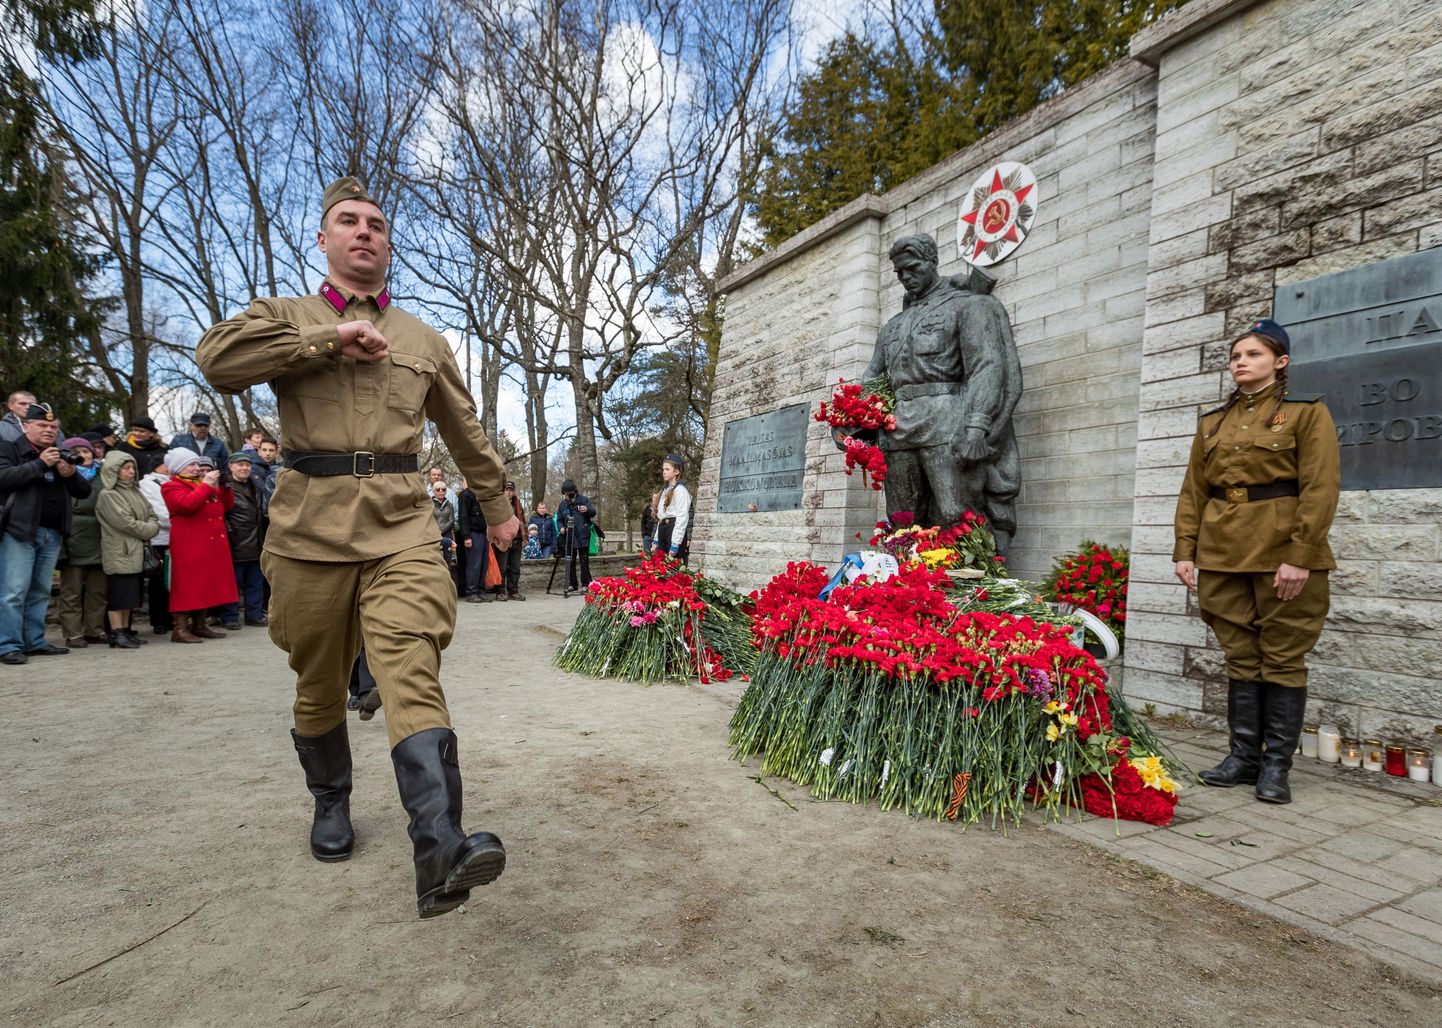 9. mai. Võidu päeva tähistamine kaitseväe kalmistul. Võidupüha, pronkssõdur, nelgid, lilled, nõukogude sõjaväe mundris noored.
FOTO: MIHKEL MARIPUU/POSTIMEES